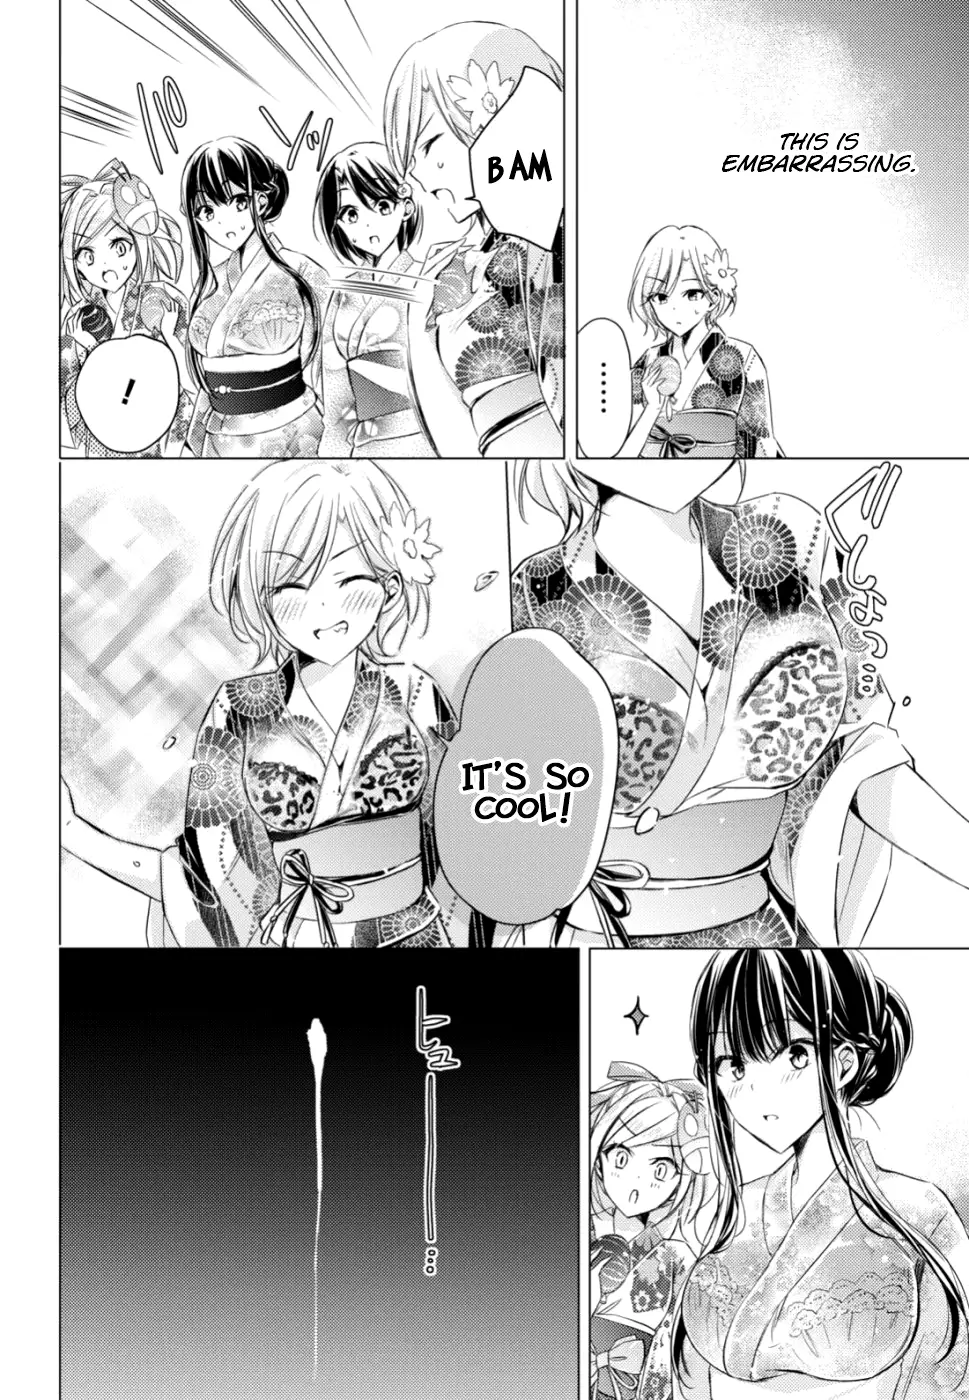 The Secret Etiquette Of Lady Takashima. - 17 page 16-7a0fa749